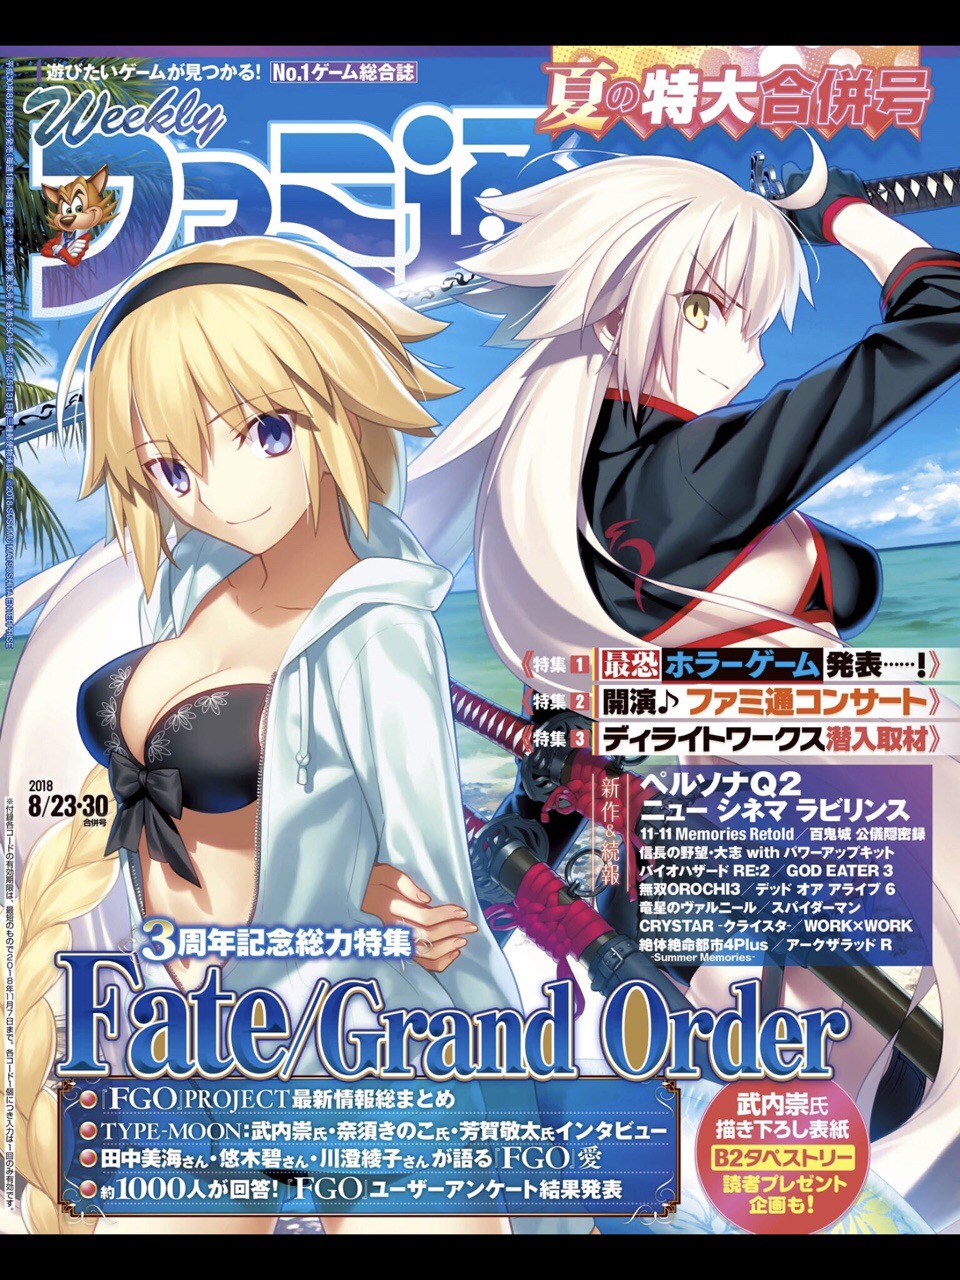 资料整理 Fami通 Fate Grand Order 三周年特集 多图 流量慎入 Nga玩家社区